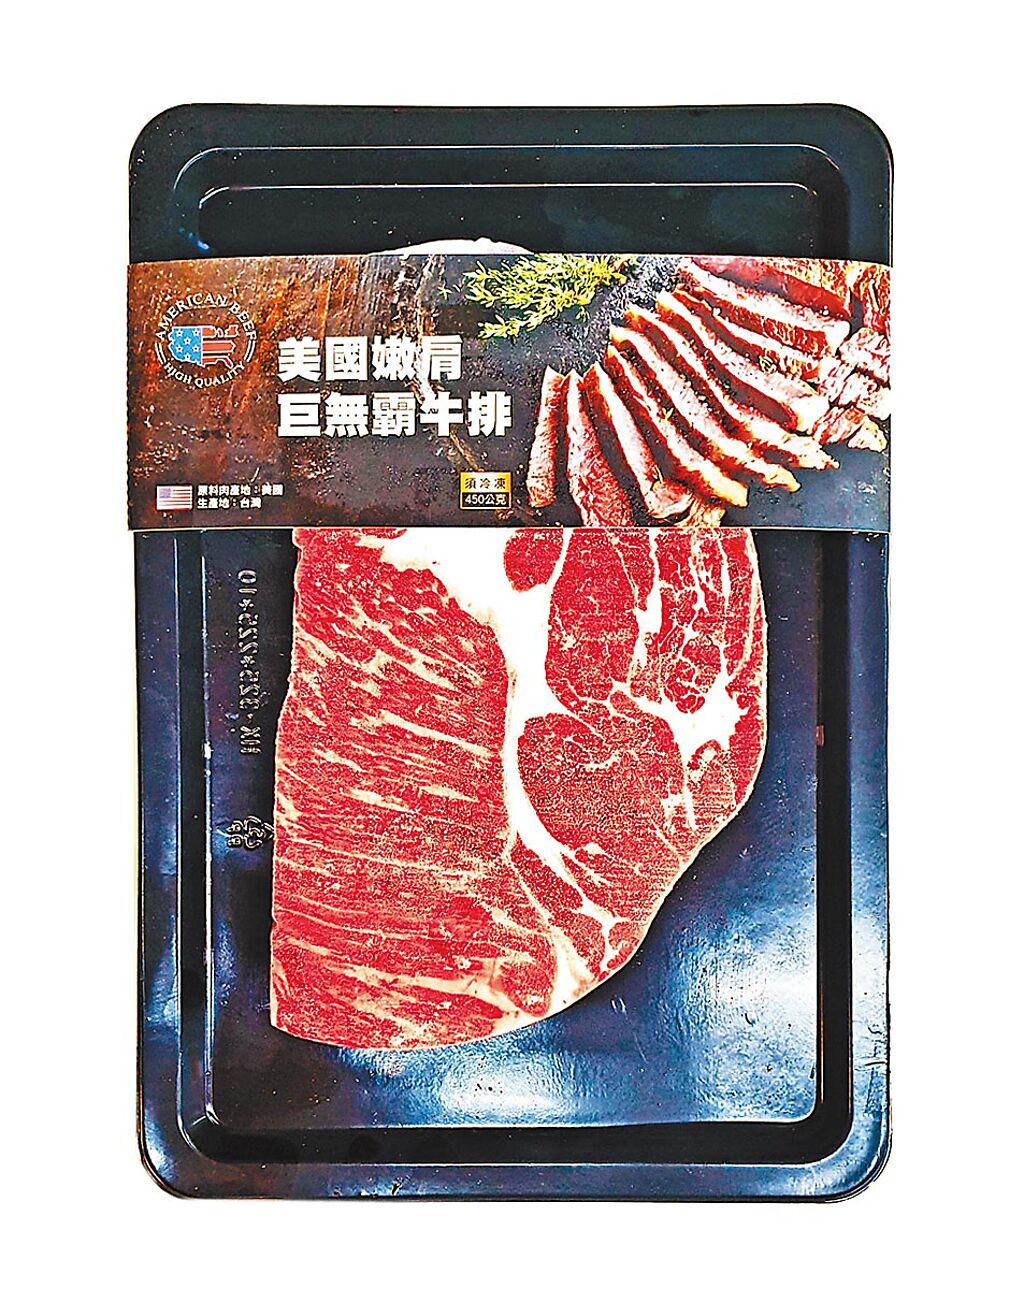 愛買美國冷凍巨無霸牛排（貼體包裝），450g，6月1日前特價249元。（愛買提供）